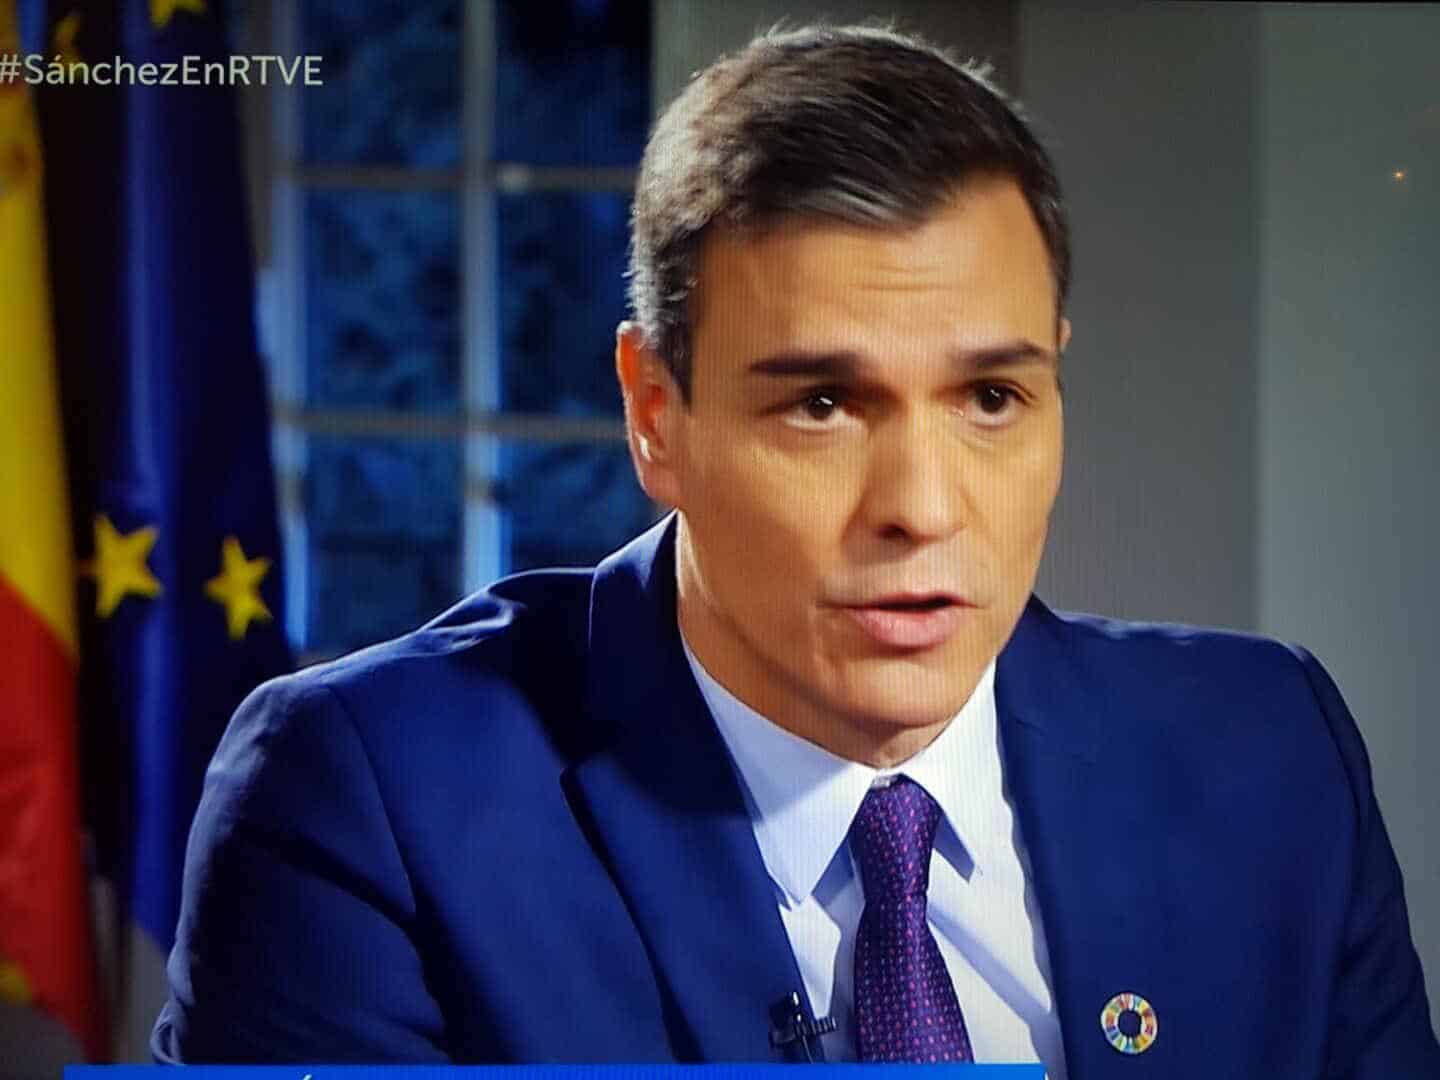 Pedro Sánchez tropieza en TVE: su entrevista sólo atrae al 11,4% de la audiencia